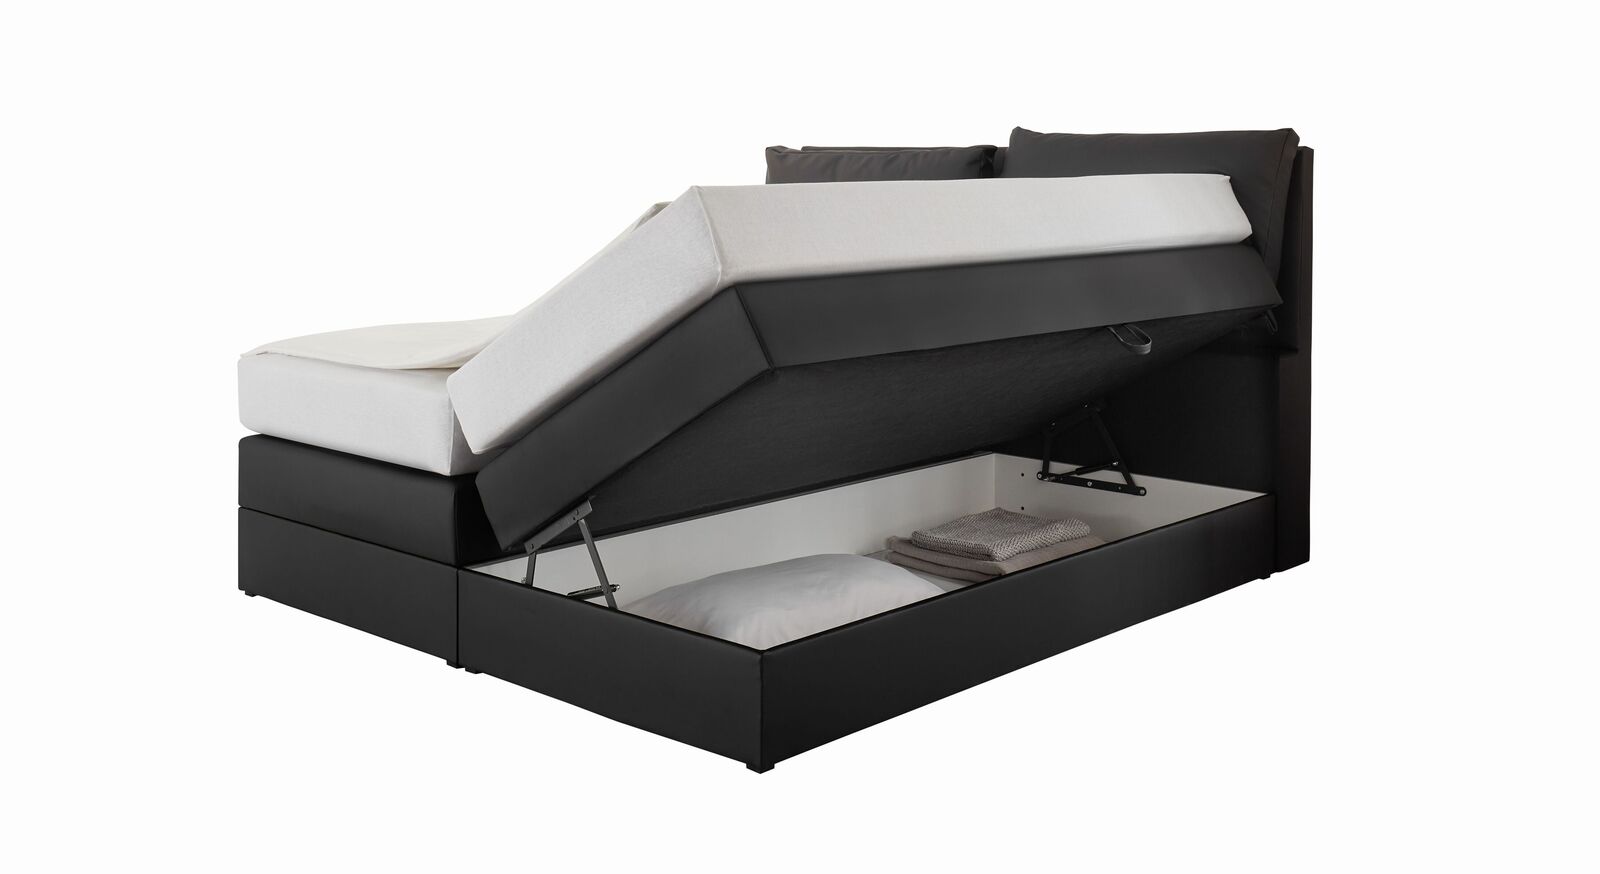 Bettkasten-Boxspringbett Elenor in schwarz mit praktischem Bettkasten